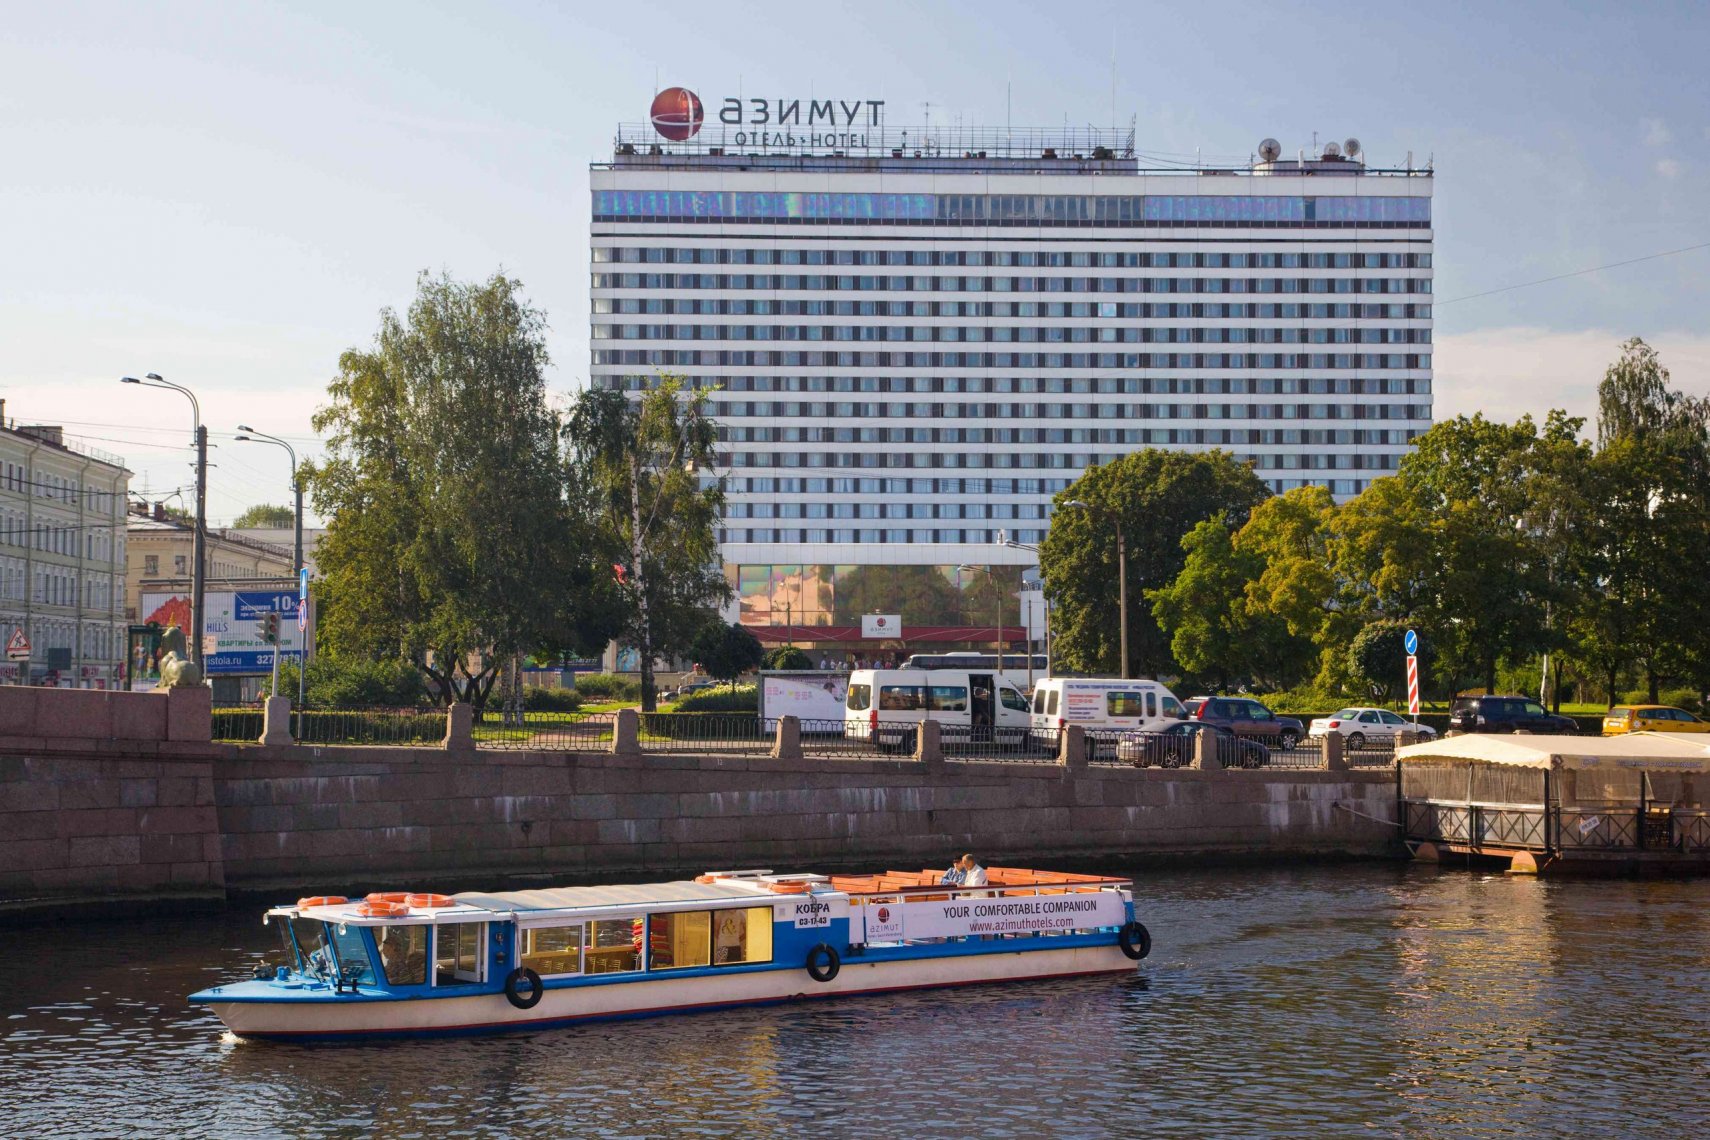 отель азимут санкт петербург официальный сайт